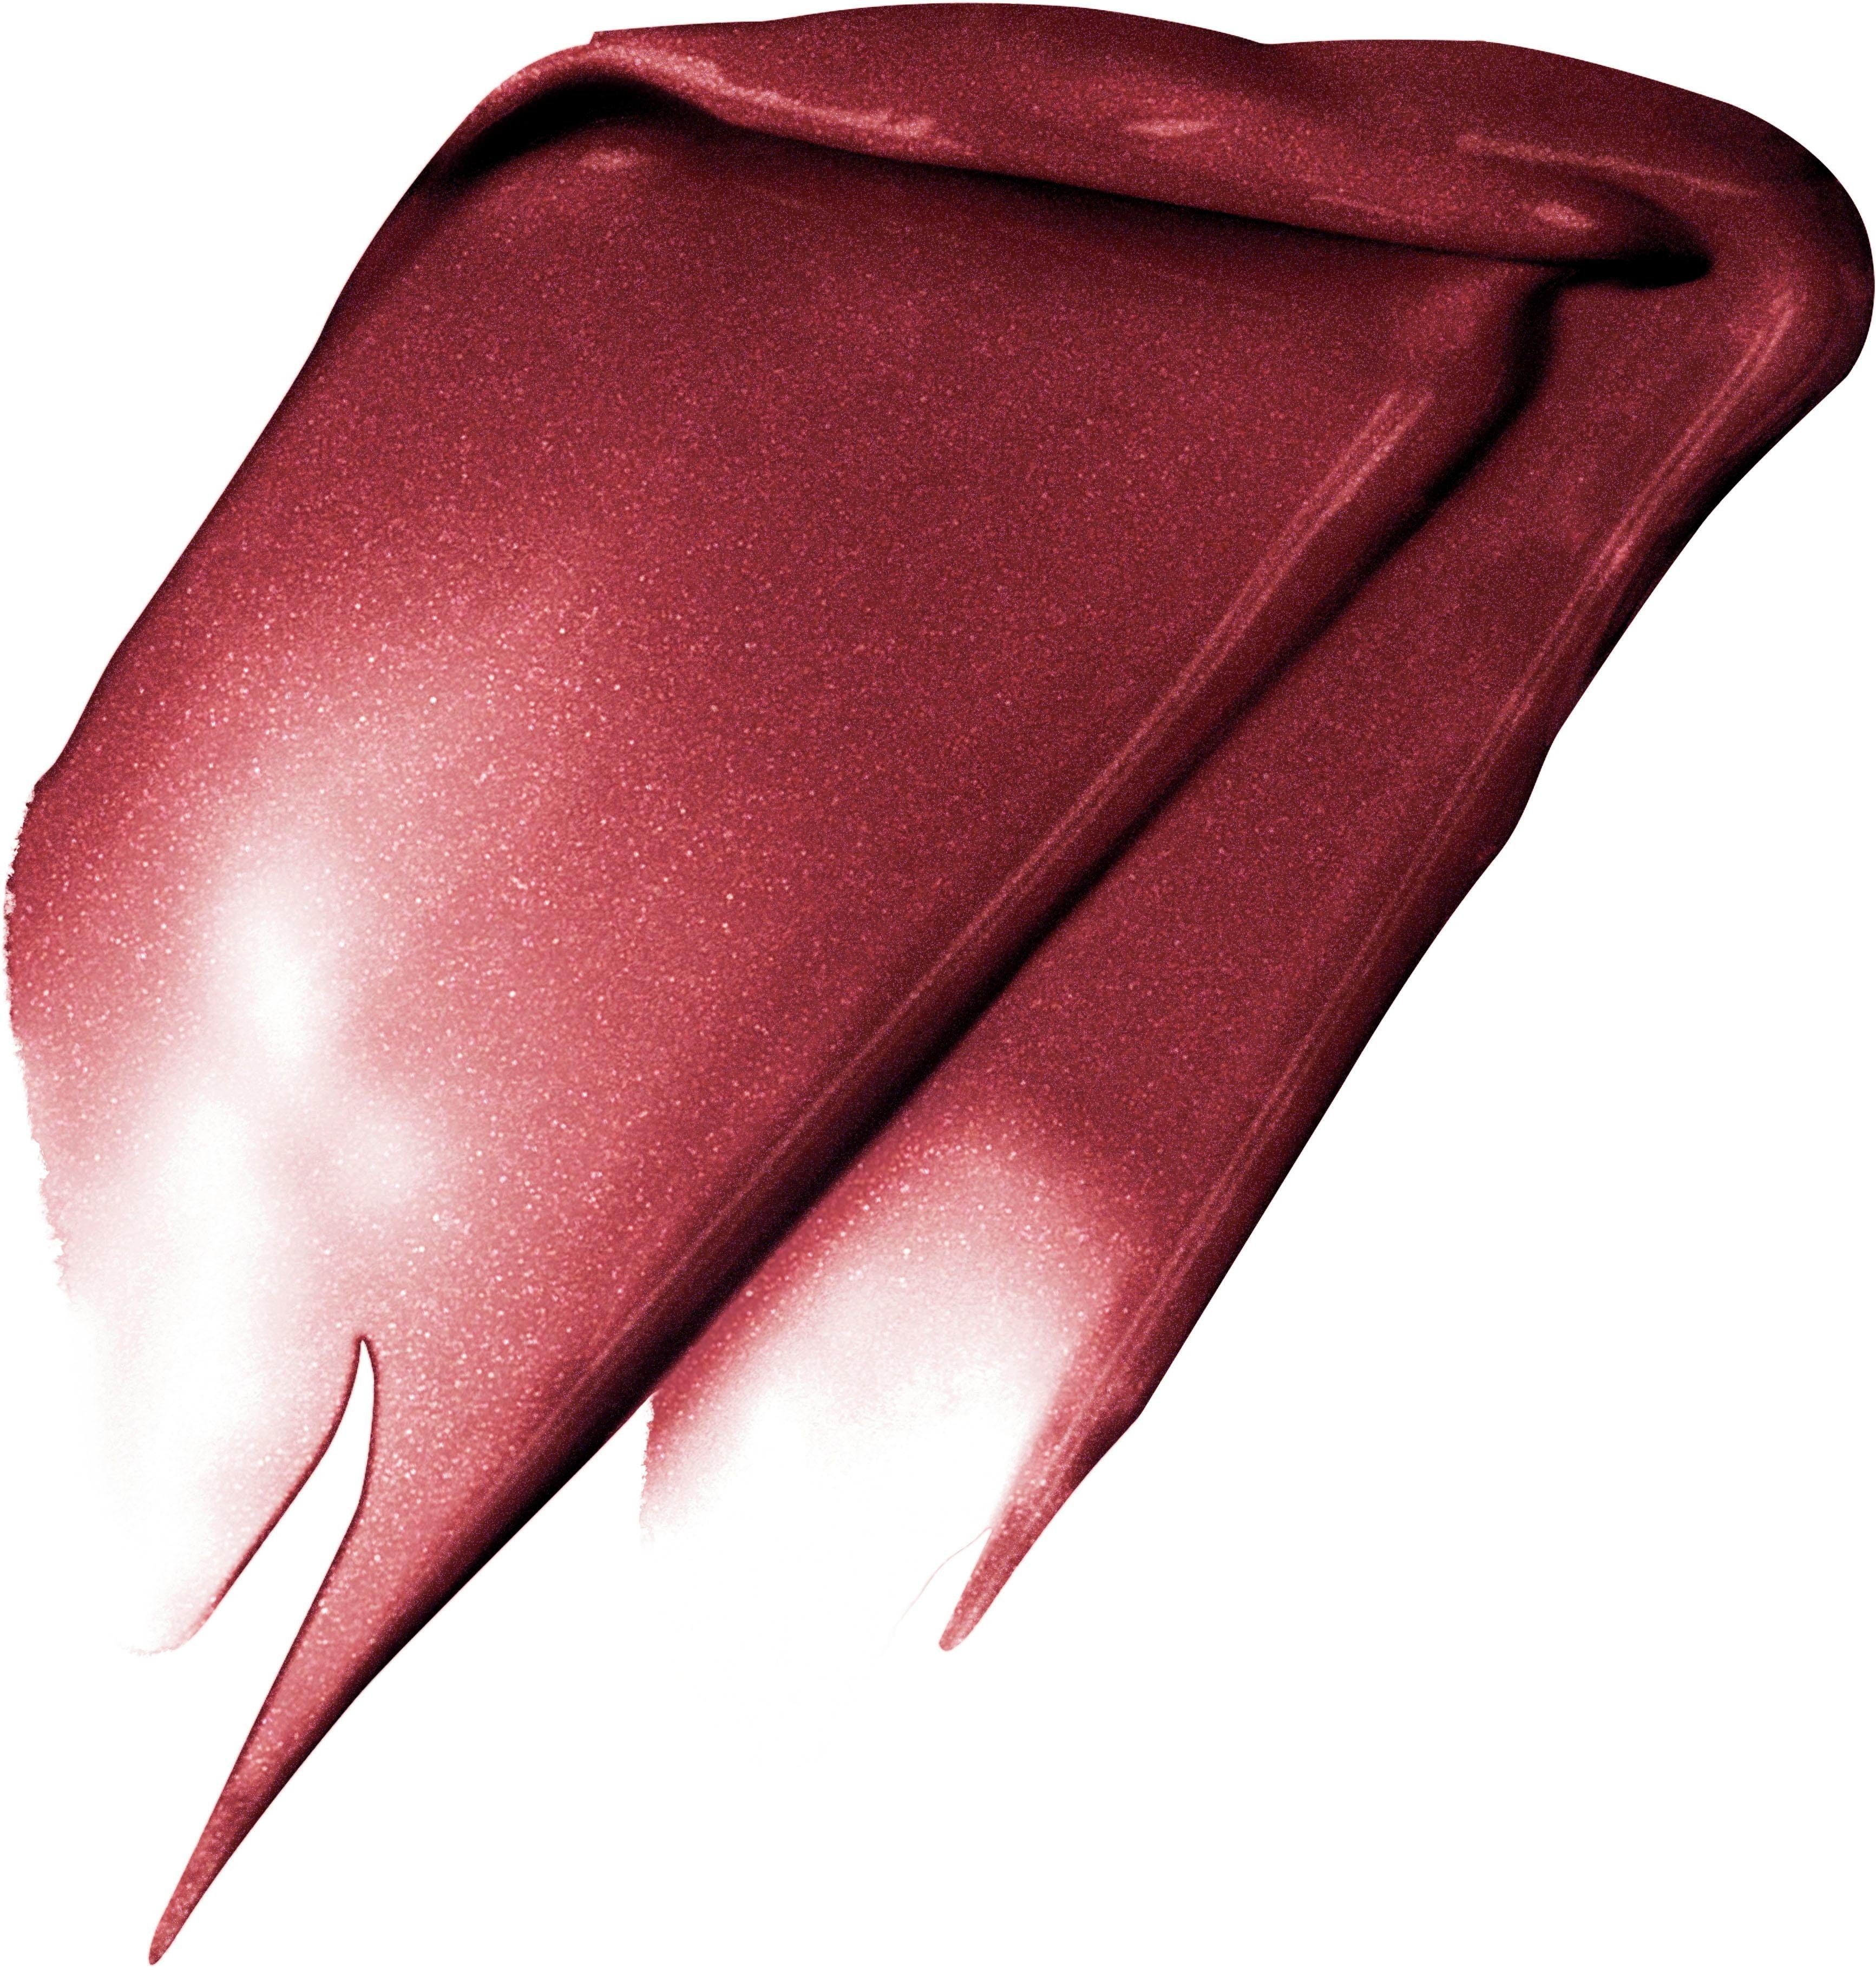 L'ORÉAL PROFESSIONNEL PARIS Lippenstift Fascinate Metallic I PARIS L'ORÉAL 205 Signature Rouge